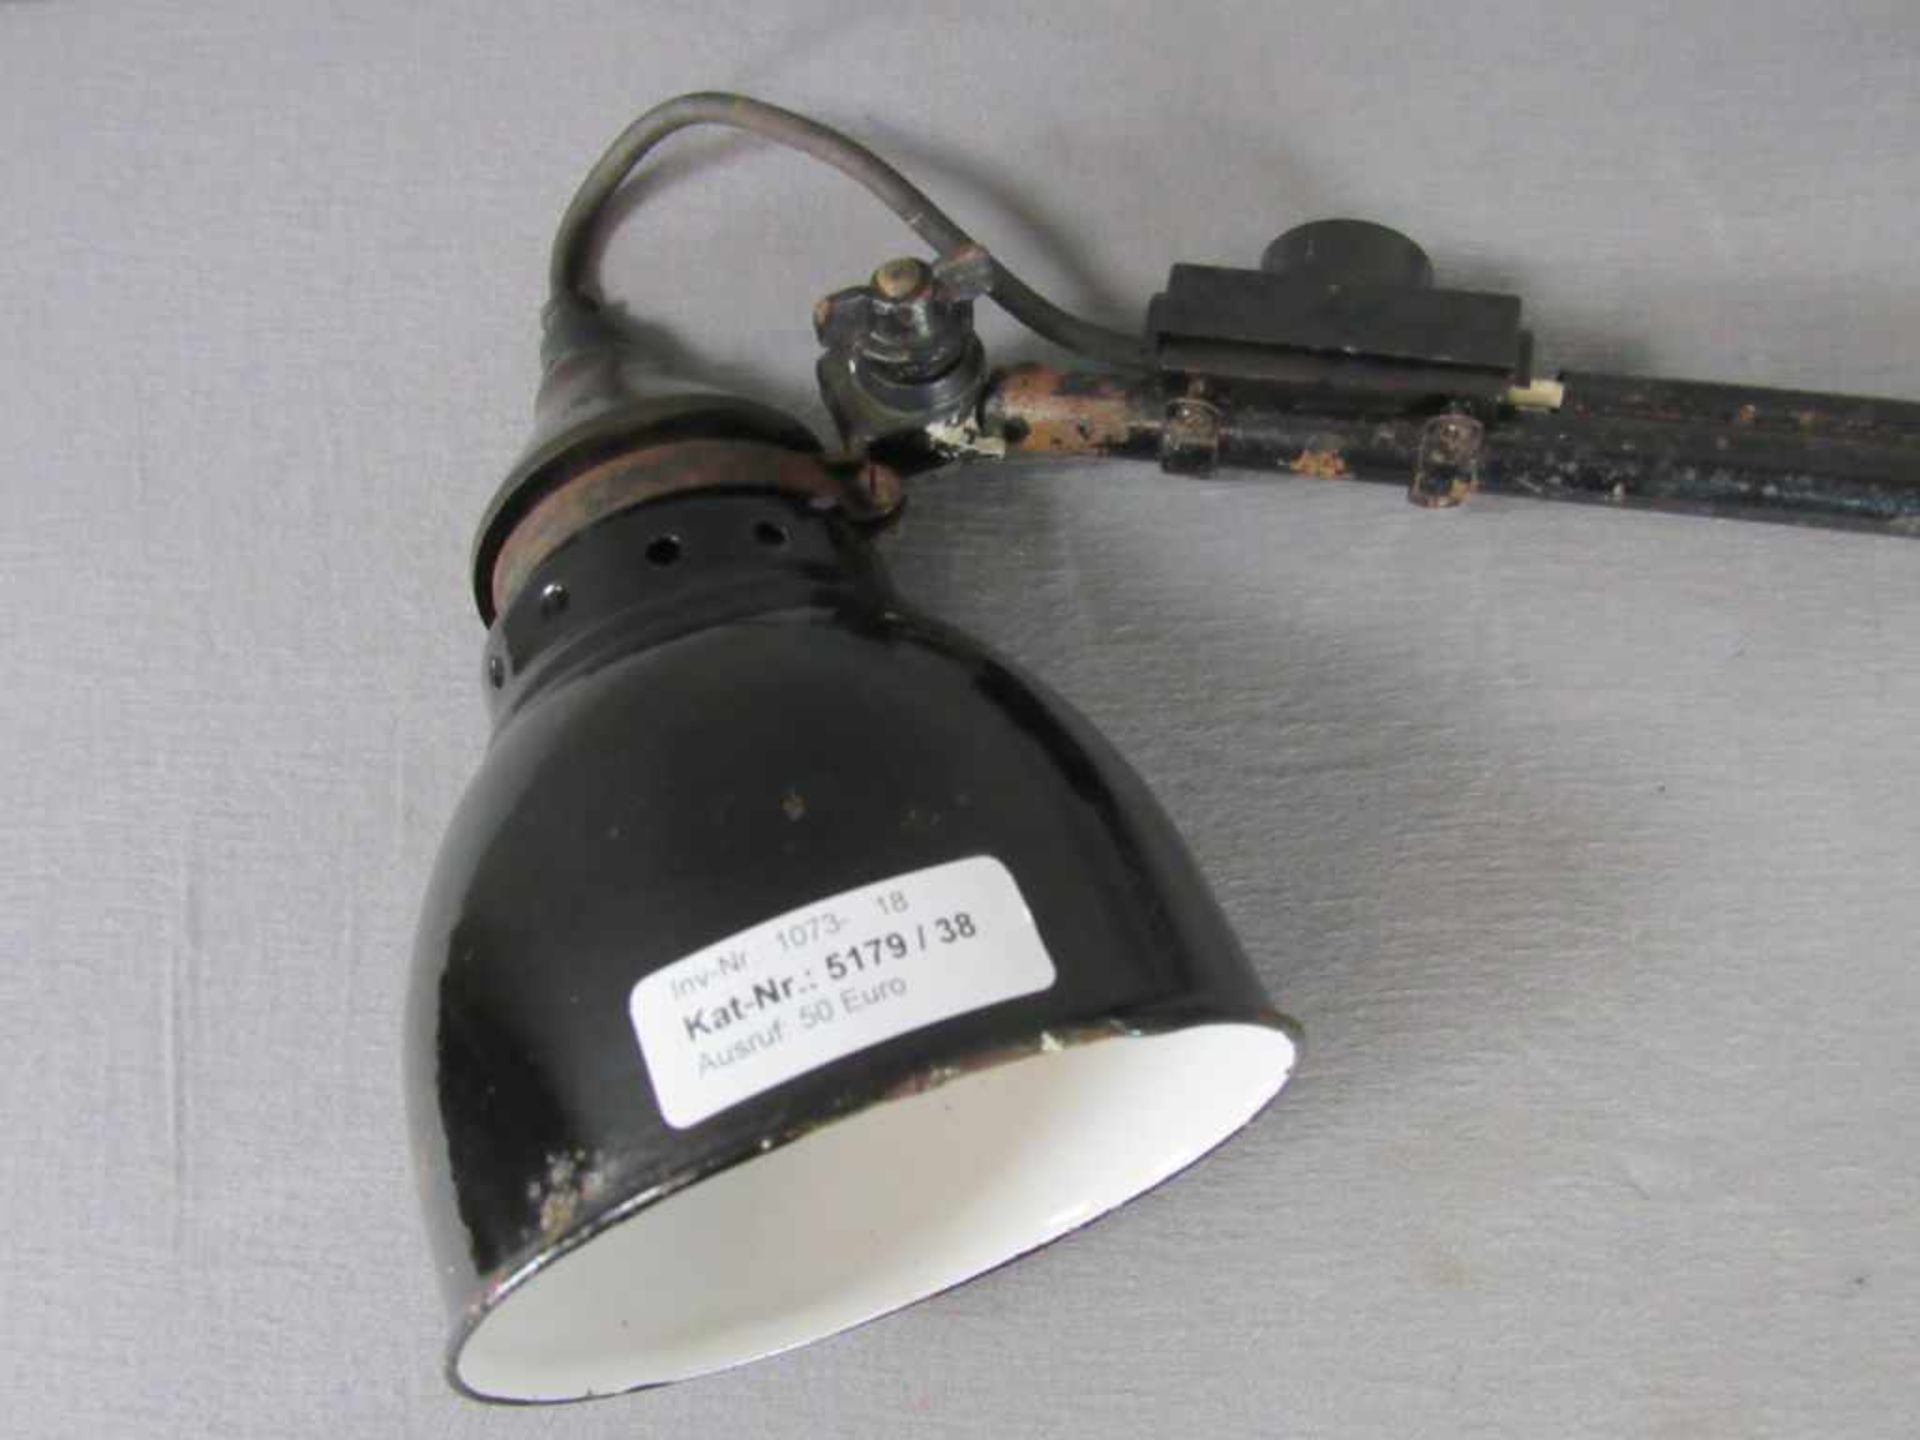 Industriedesign Scherenlampe Arbeitsplatzlampe 20er-30er Jahre Hersteller: Rademacher Länge ca:66cm - Image 2 of 3